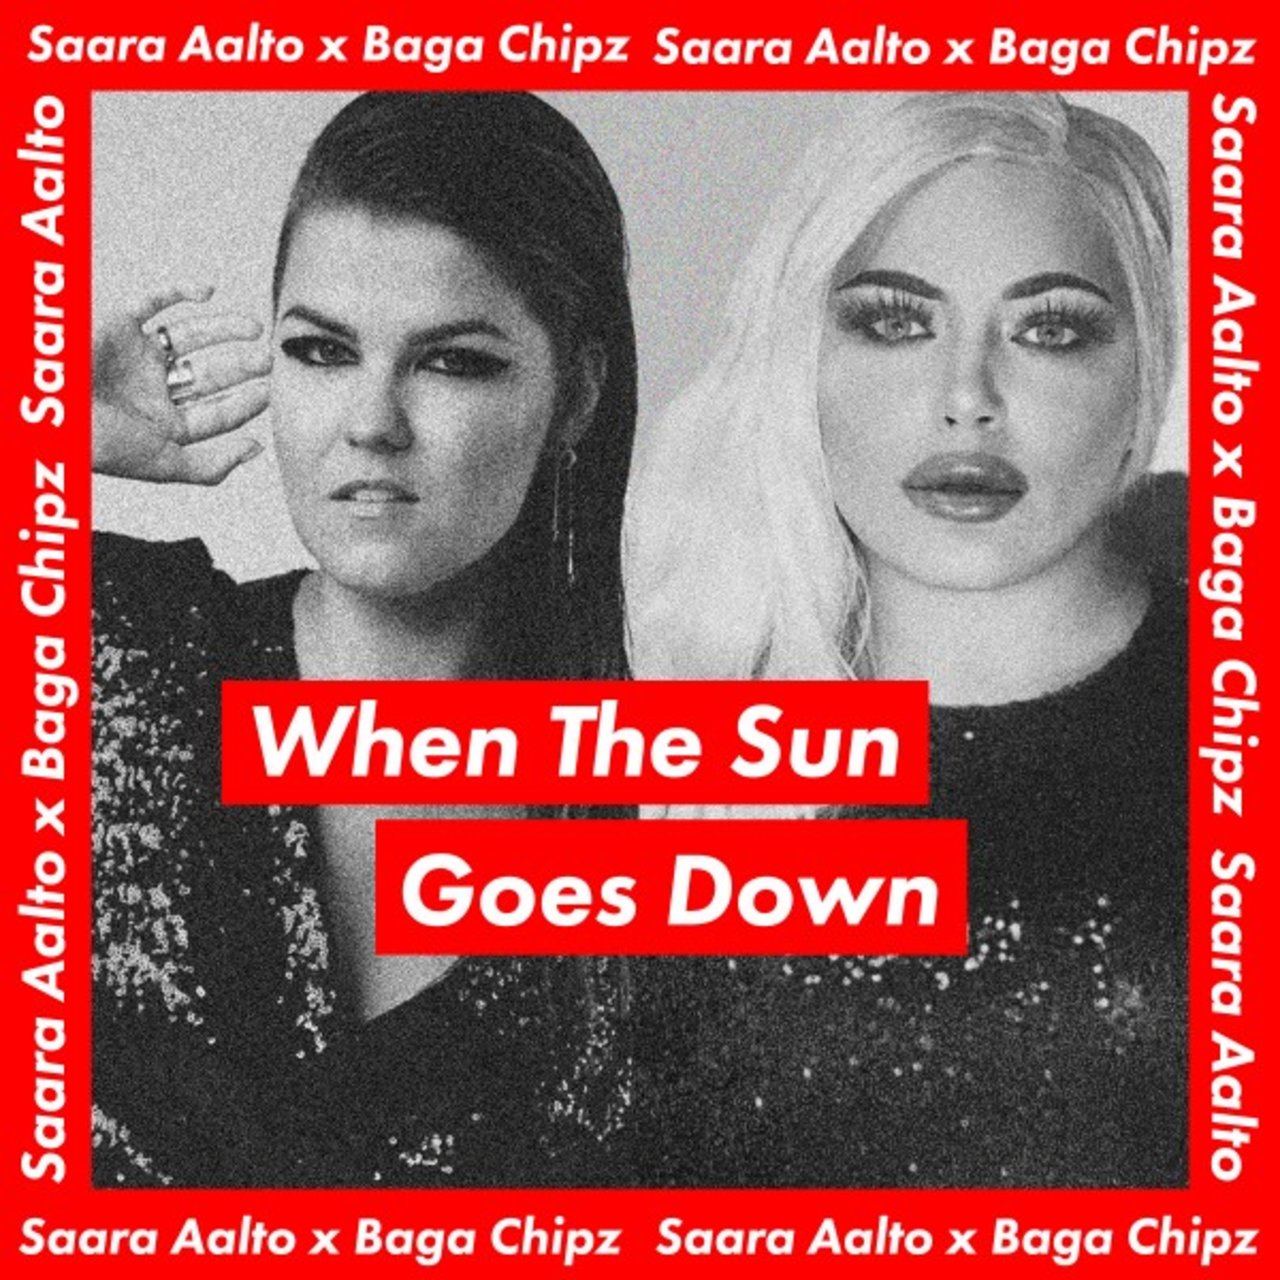 Saara Aalto & Baga Chipz When the Sun Goes Down cover artwork